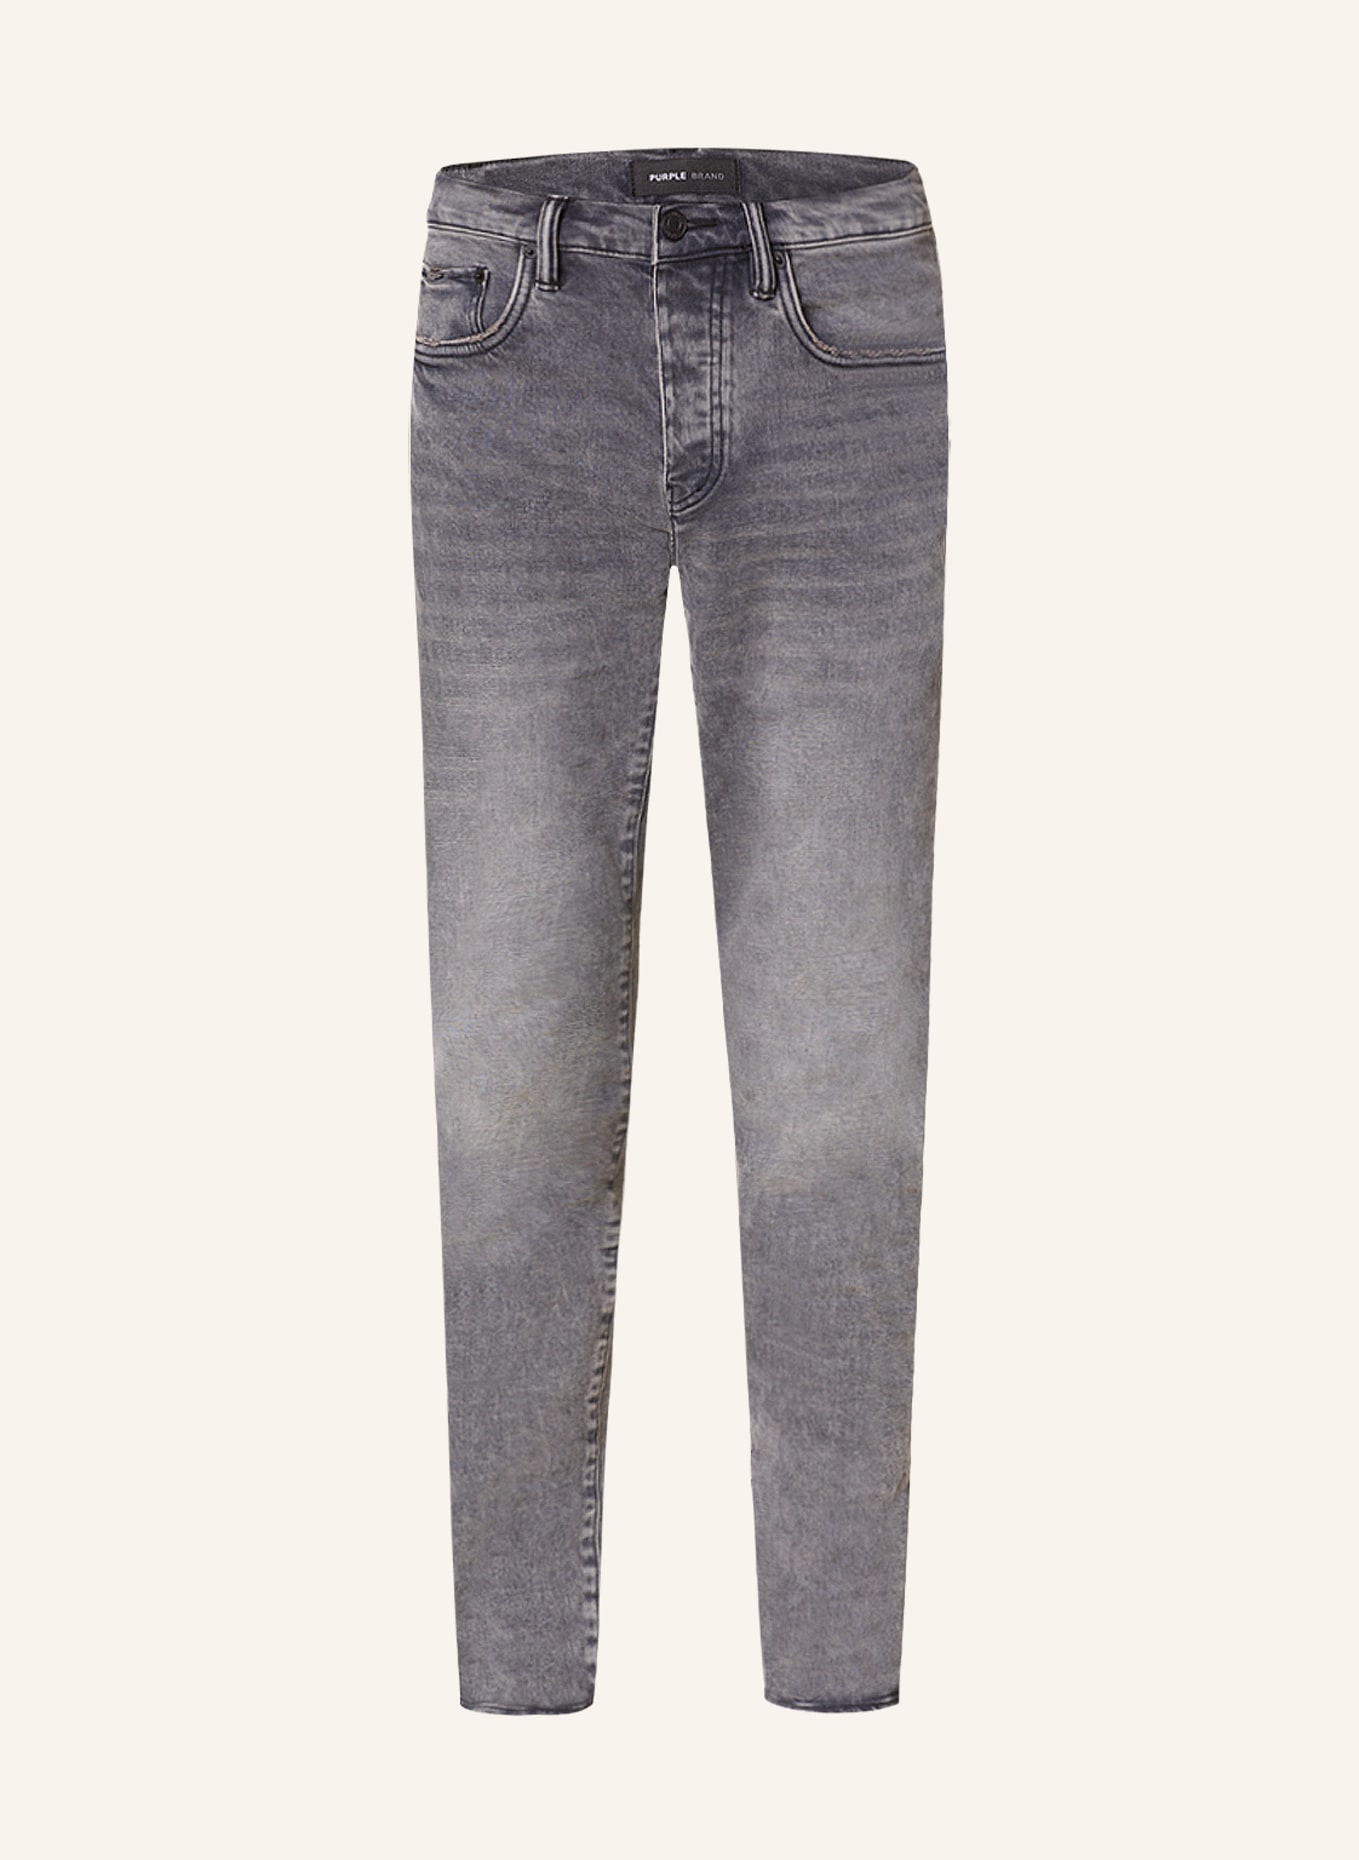 PURPLE BRAND Jeans slim fit in abvg ash black vintage